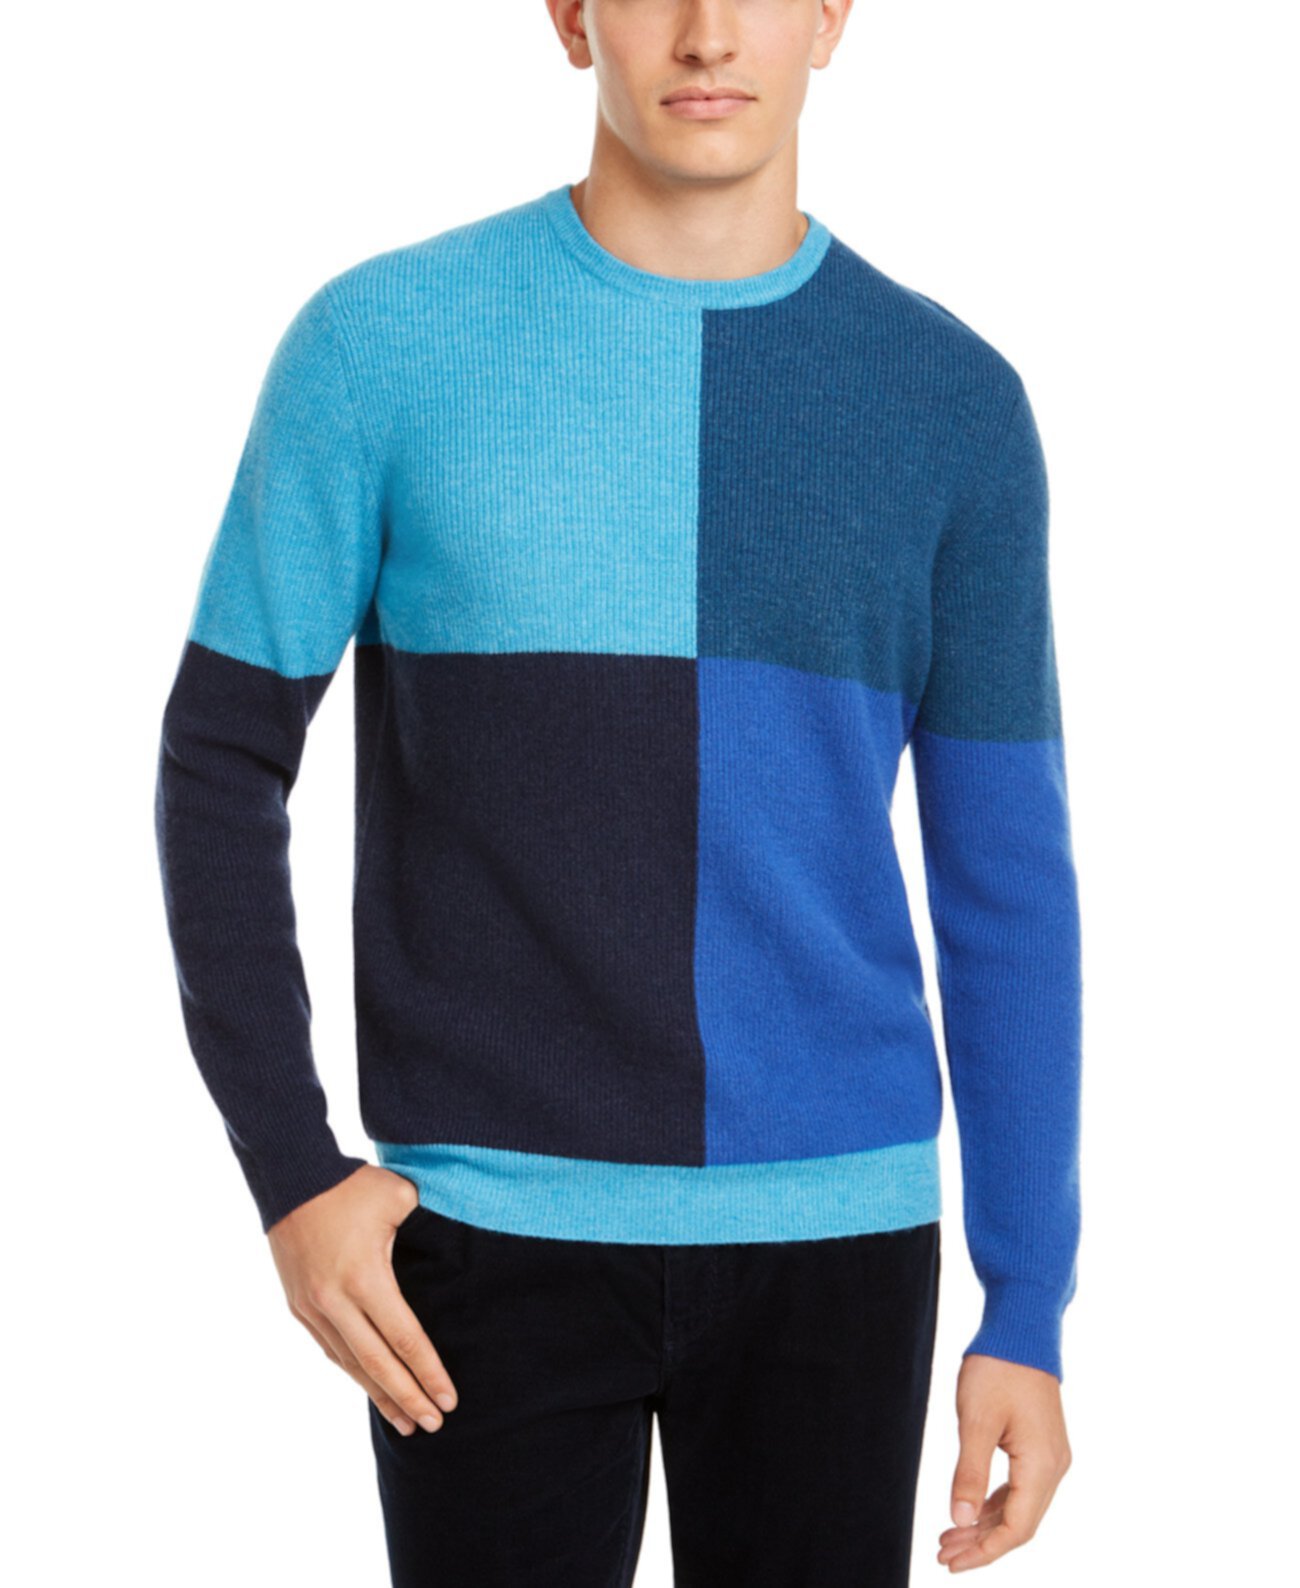 Мужской кашемировый свитер обычного цвета с цветными блоками, созданный для Macy's Club Room